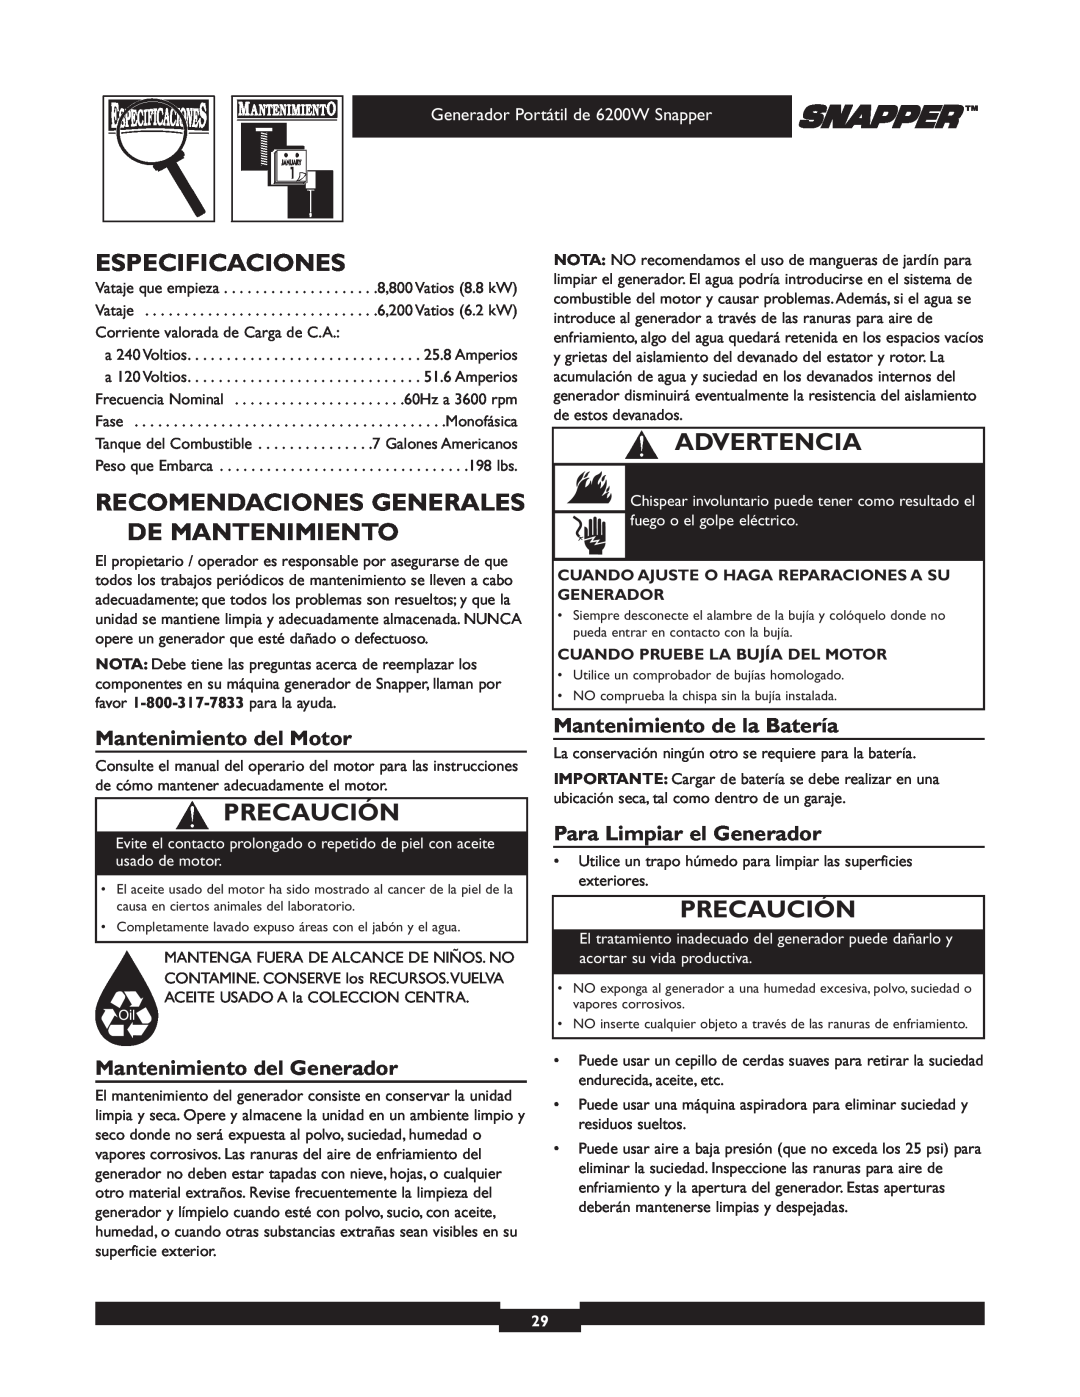 Snapper 30216 manual Especificaciones, Recomendaciones Generales De Mantenimiento, Mantenimiento del Motor, Advertencia 